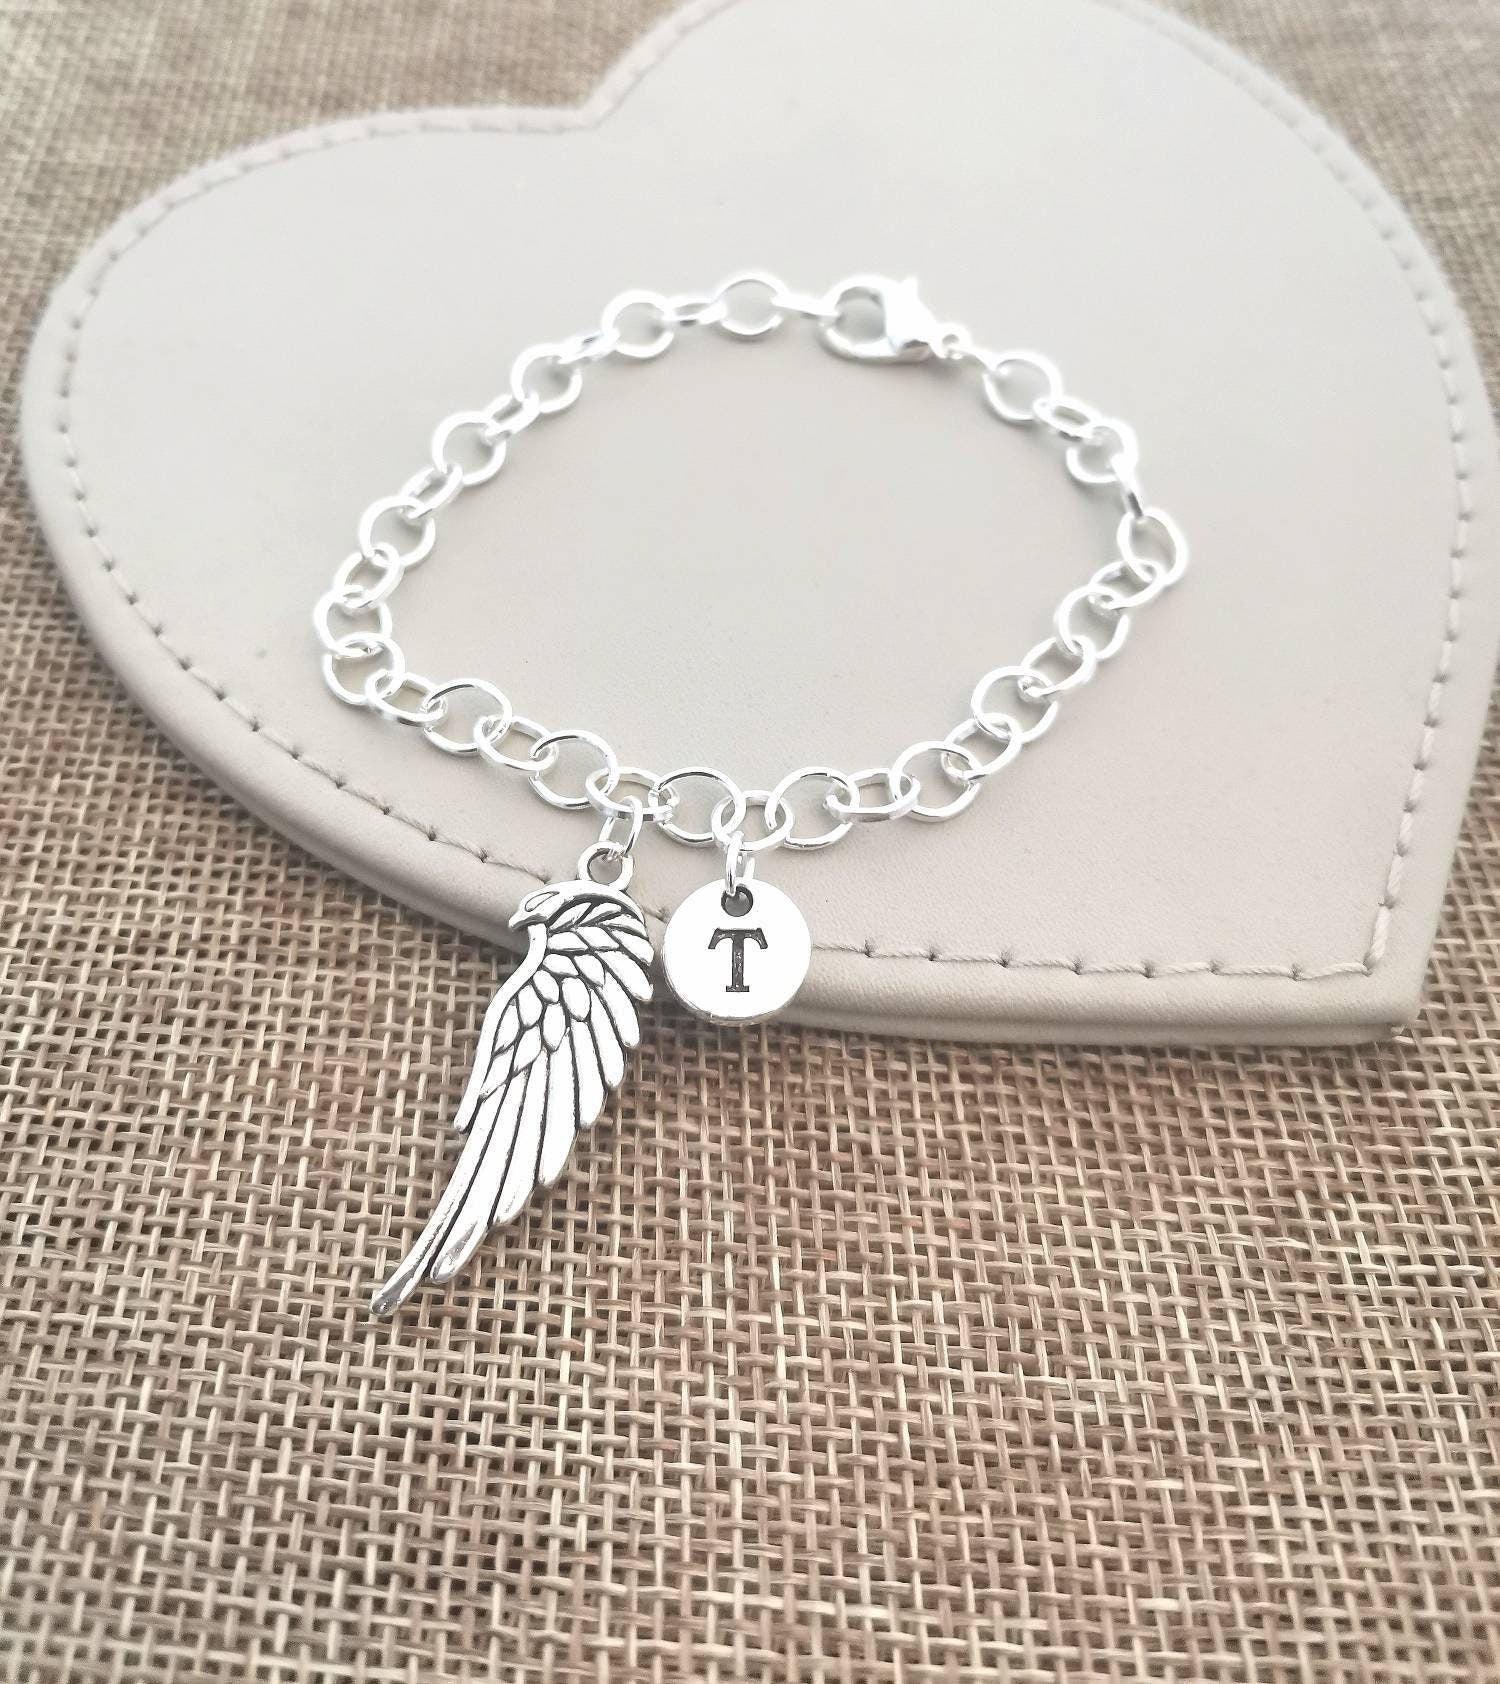 Wing Bracelet, Angel Wing Bracelet, Wing Bangle, Memorial Bracelet,Remembrance gift, Sympathy bracelet, Remembrance Bracelet , Personalized